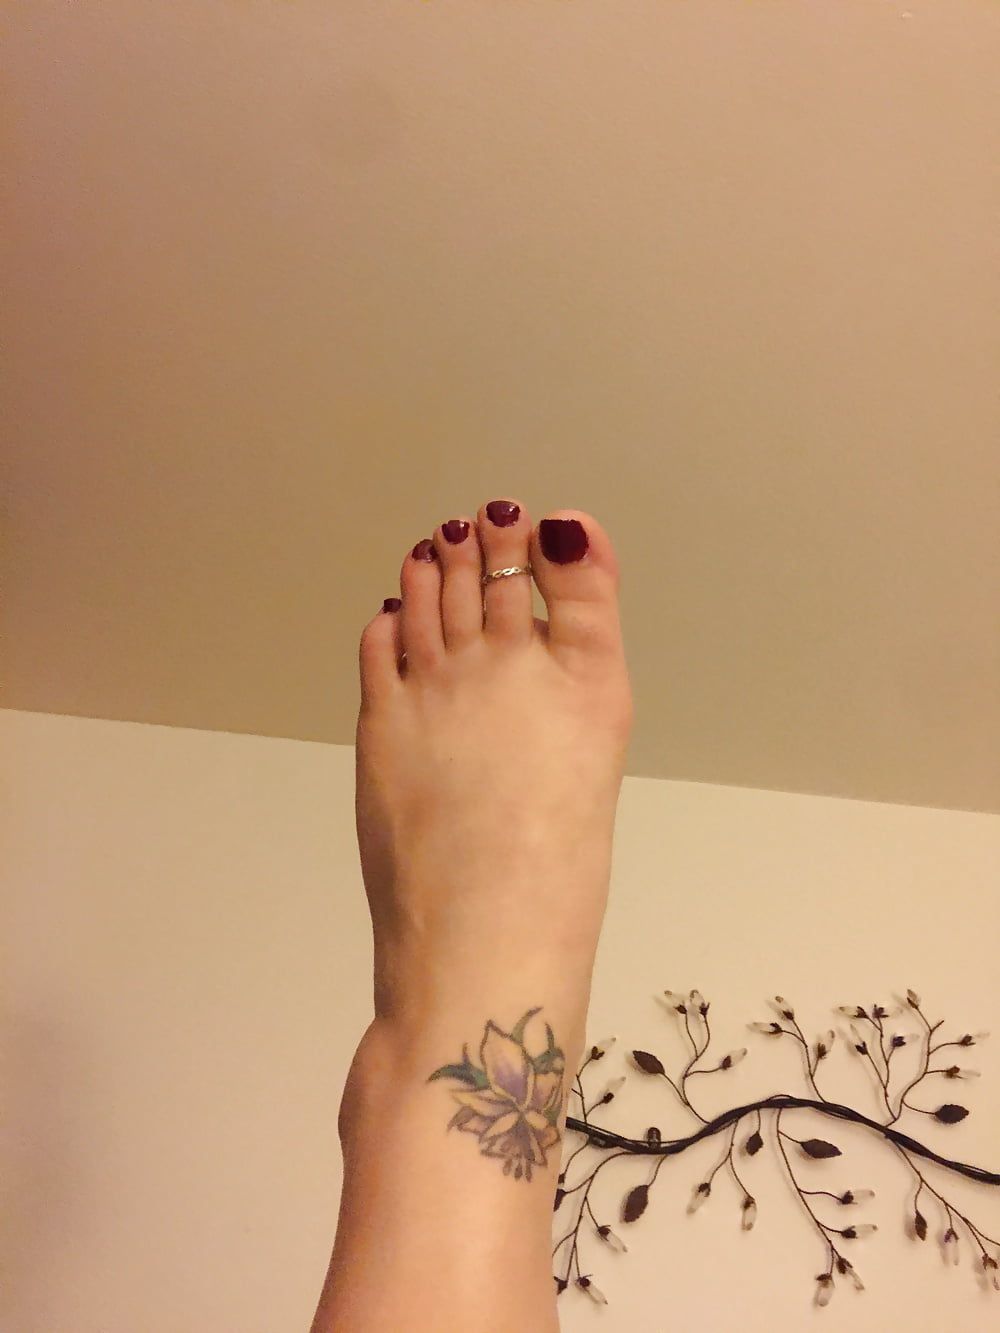 Amateur feet and Ass #6